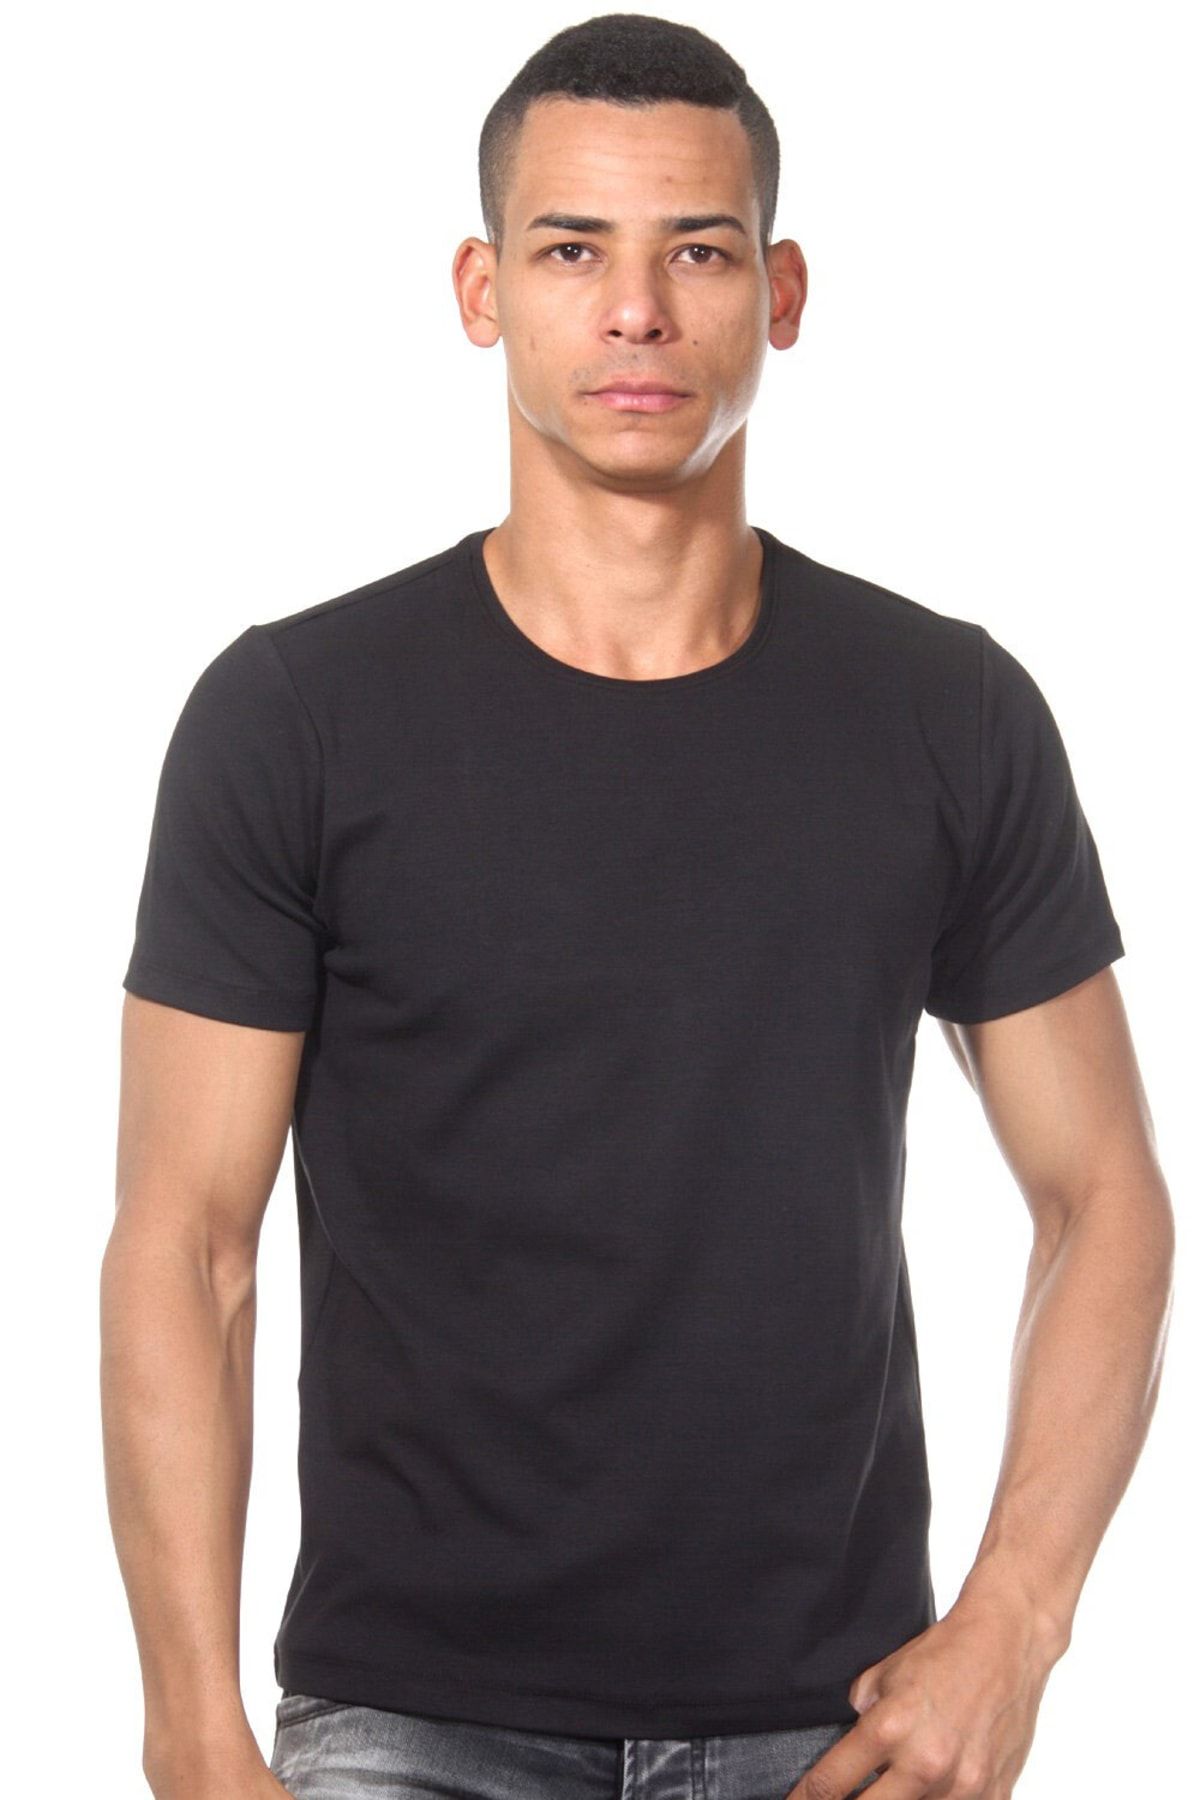 Darkzone Erkek Renkli Siyah Basic T-shirt DZN8601SY